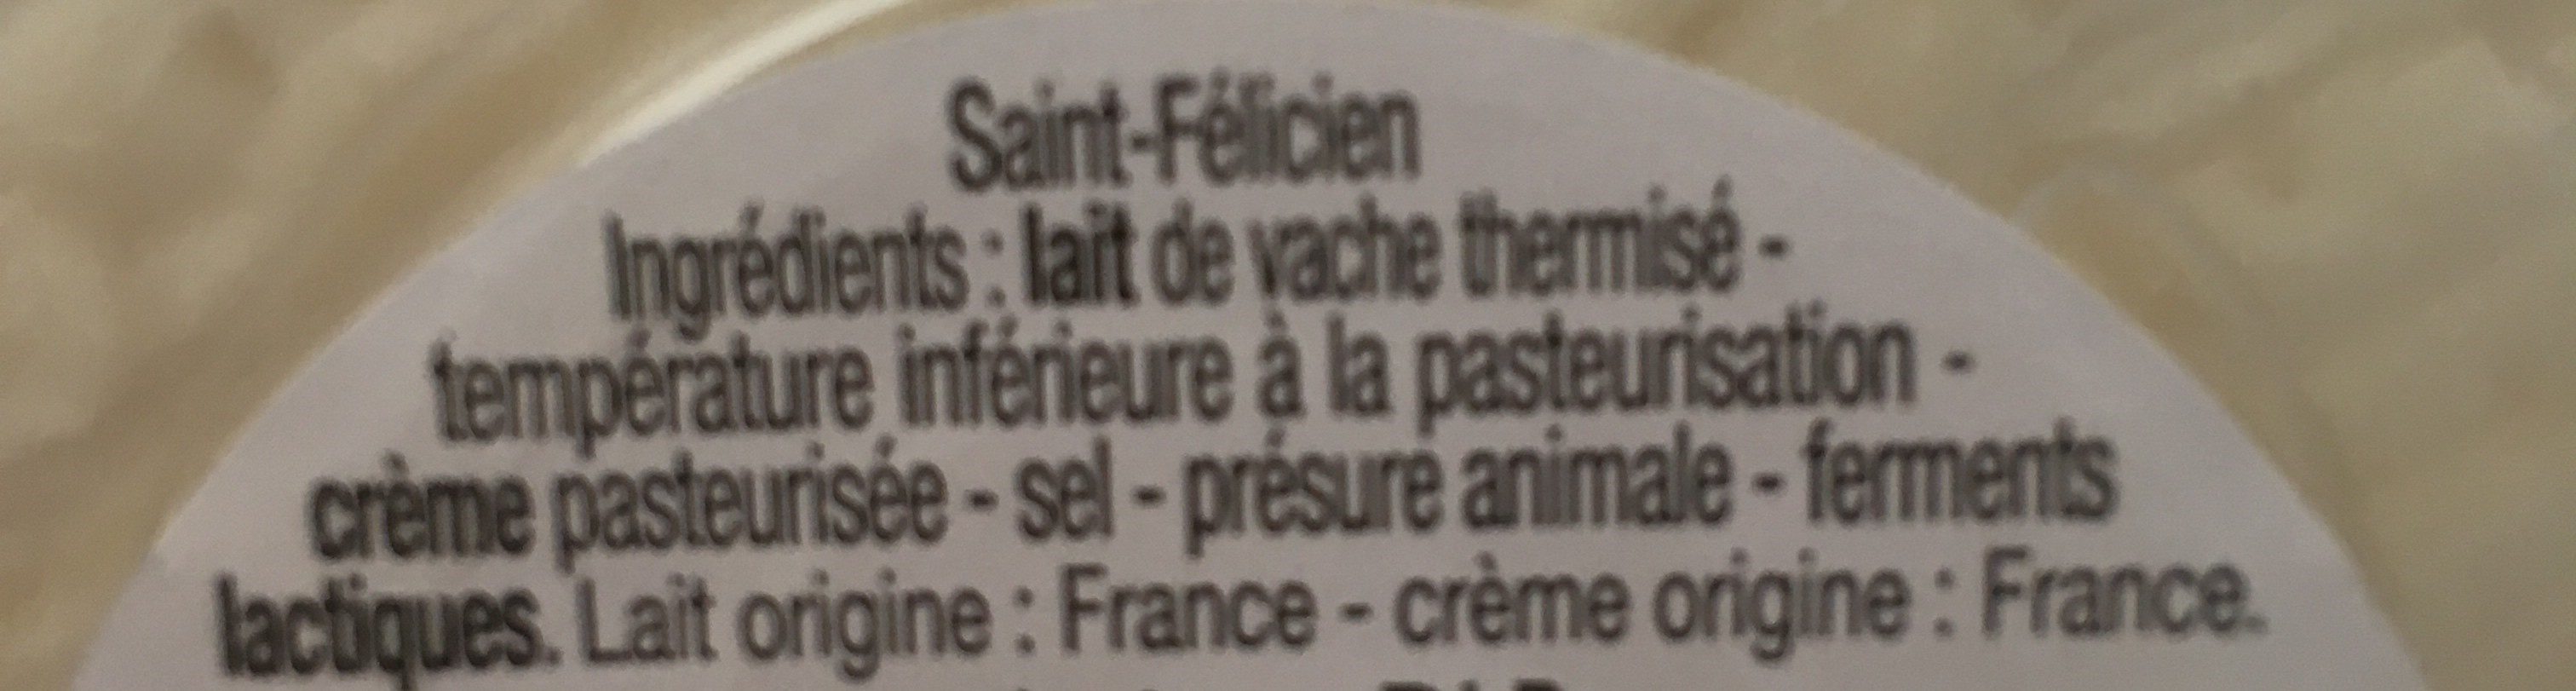 Saint-Felicien - Ingrédients